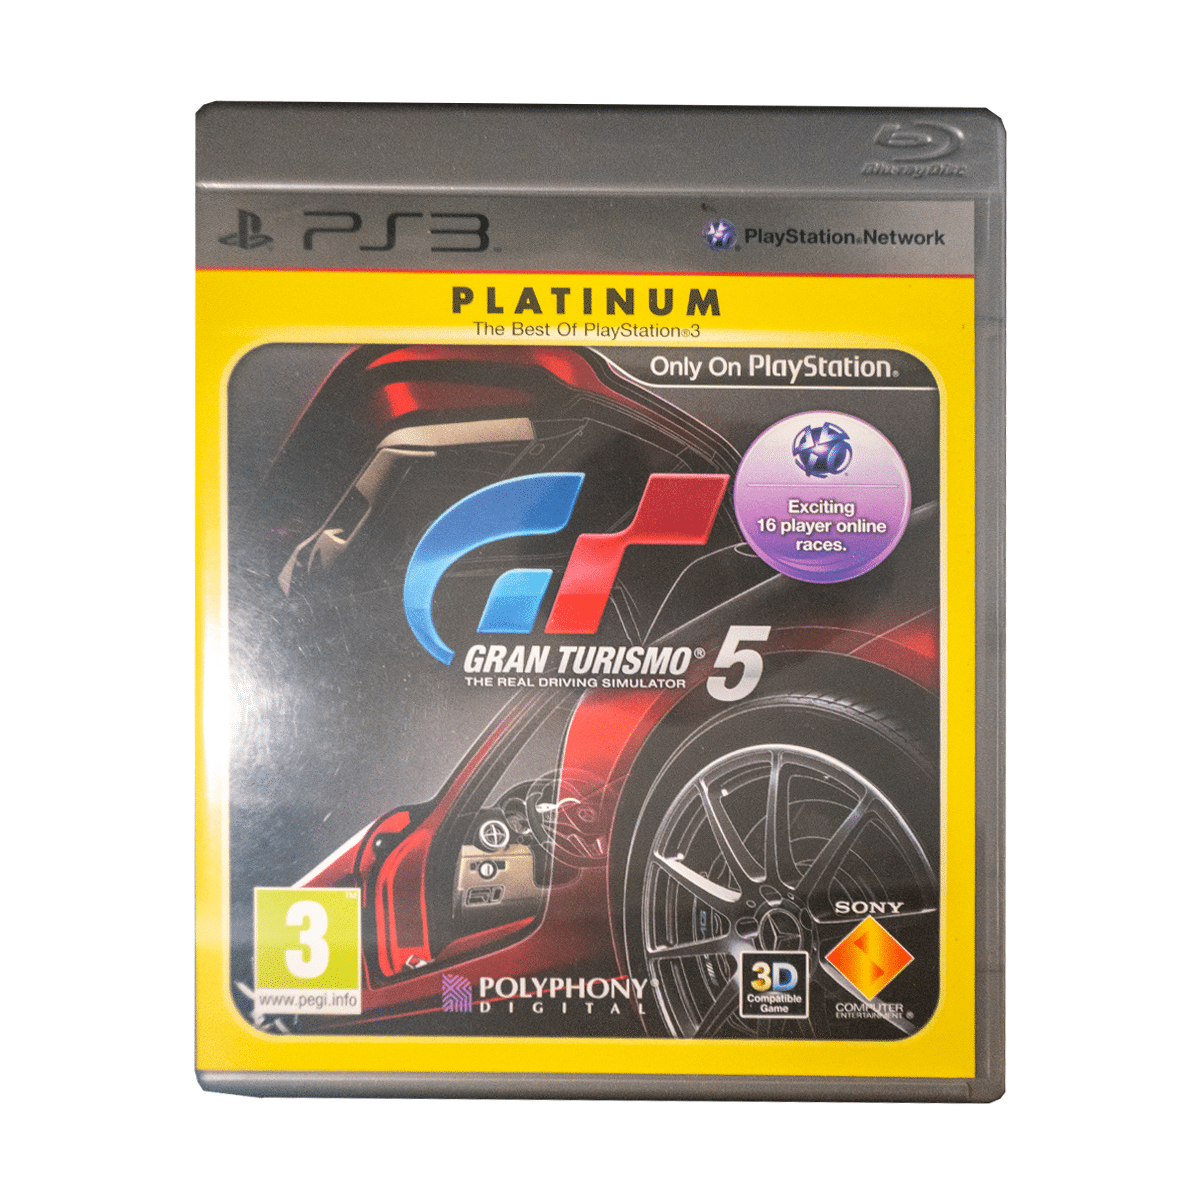 Optimistisk At søge tilflugt Modsigelse Gran Turismo 5 [Platinum] - PlayStation 3 Spil - Retro Spilbutik